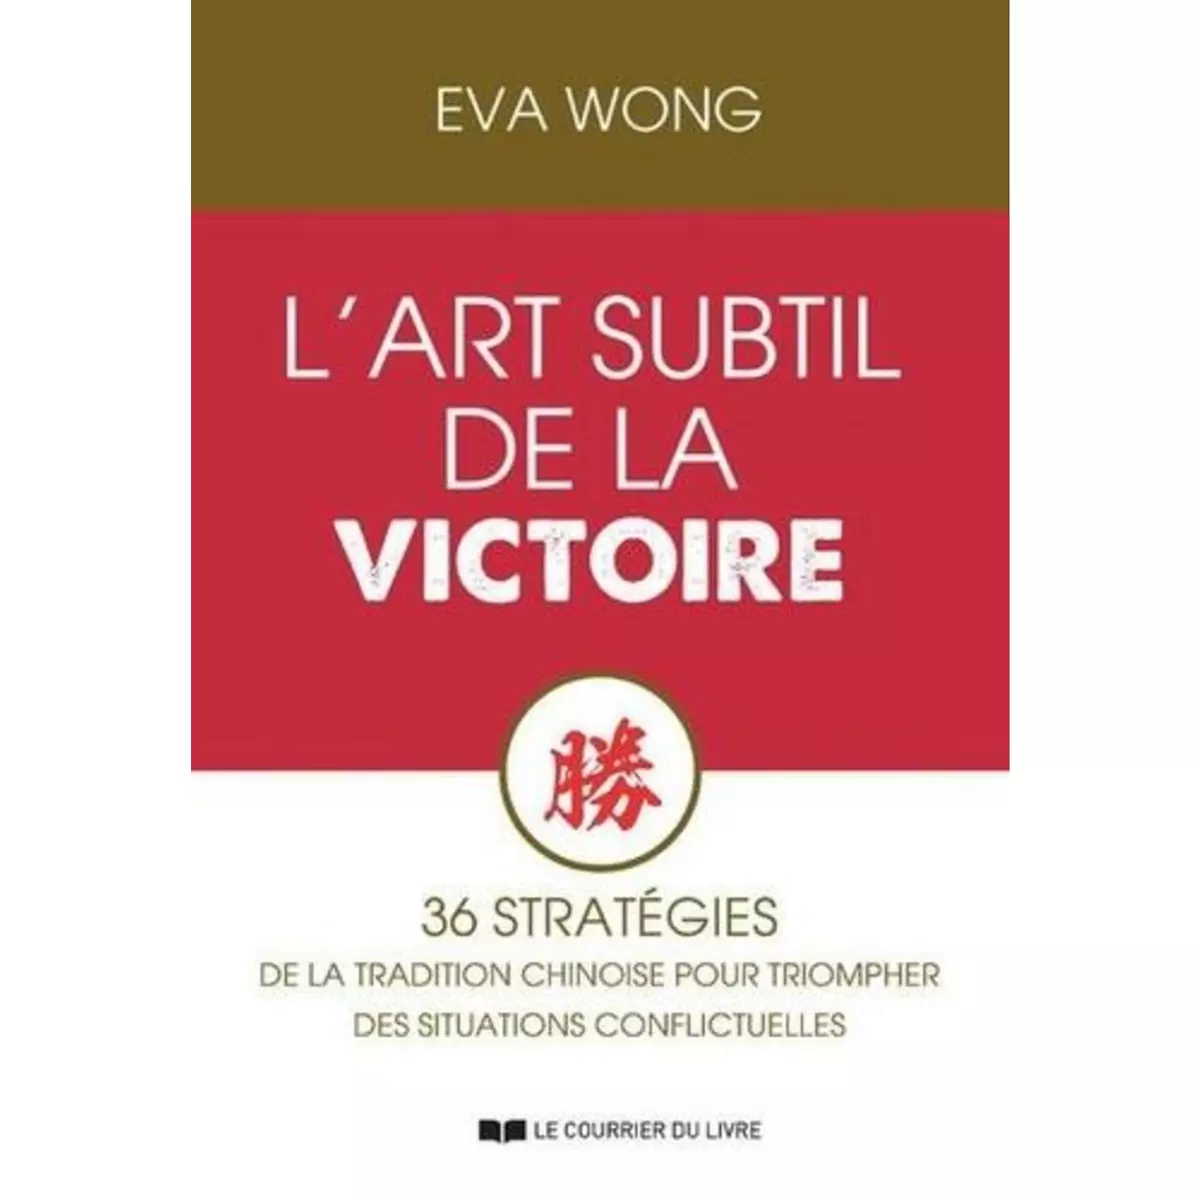  L'ART SUBTIL DE LA VICTOIRE. 36 STRATEGIES DE LA TRADITION CHINOISE POUR TRIOMPHER DES SITUATIONS CONFLICTUELLES, Wong Eva